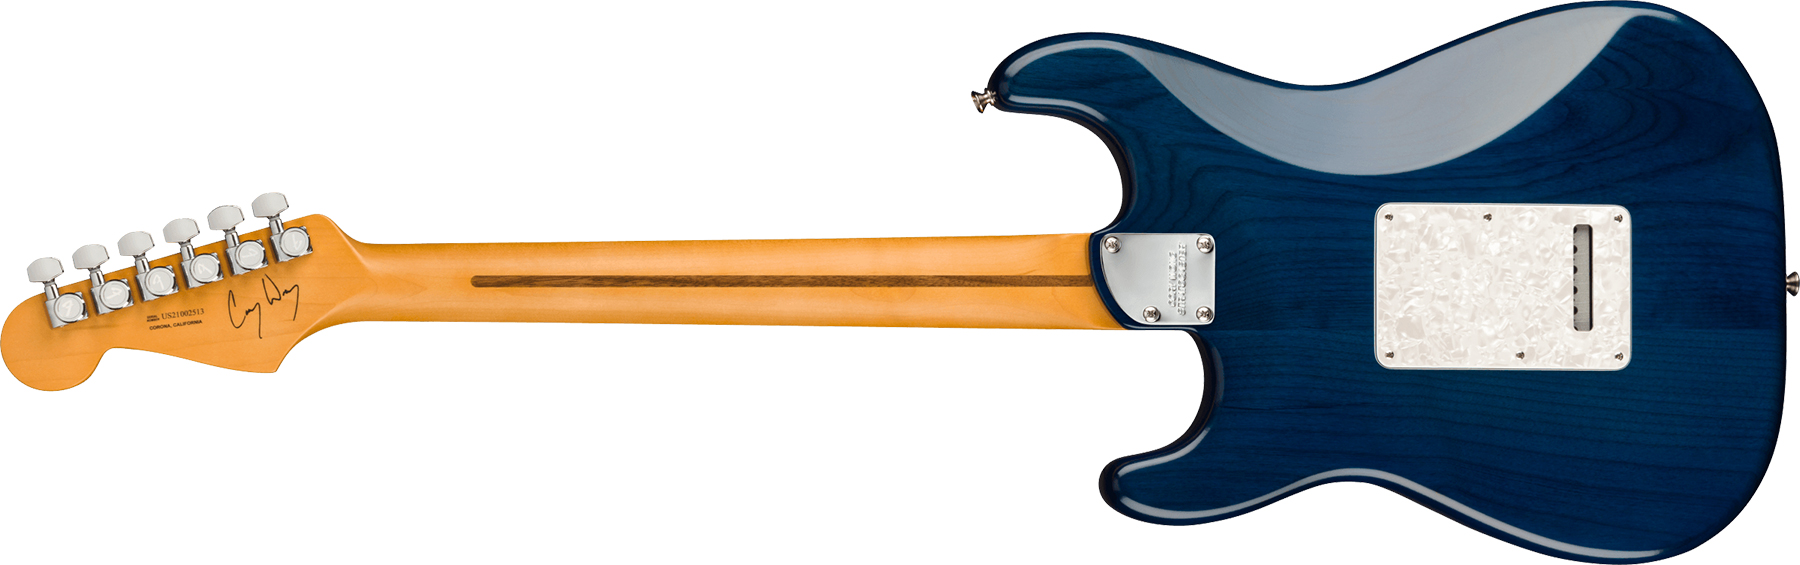 Fender Cory Wong Strat Signature Usa 3s Trem Rw - Sapphire Blue Transparent - Guitare Électrique Forme Str - Variation 1